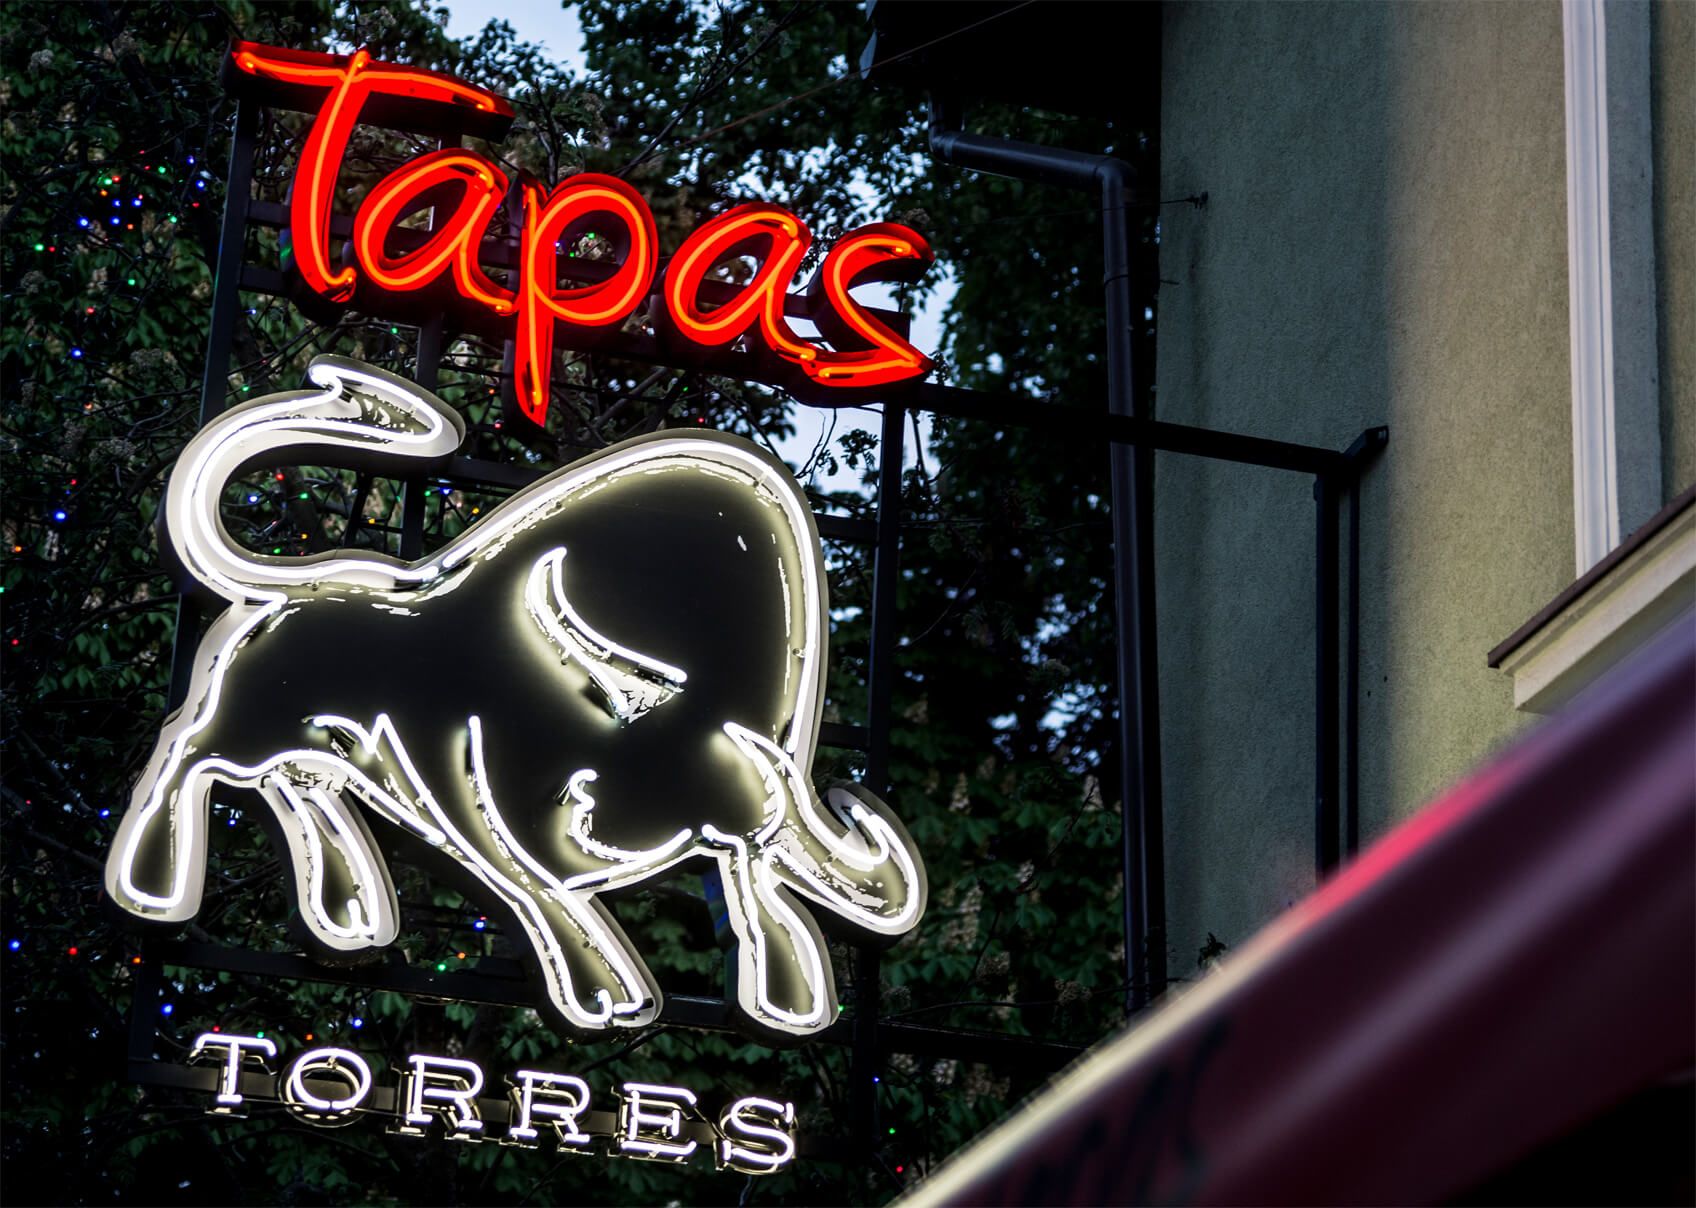 Tapas torres - neon-tapas-torres-byk-neon-nad-wejsciem-do-restauracji-neon-podswietlany-neon-przestrzenny-nen-na-wysokosci-neon-na-stelazu-logo-neonowe-sopot-restauracja-hiszpanska